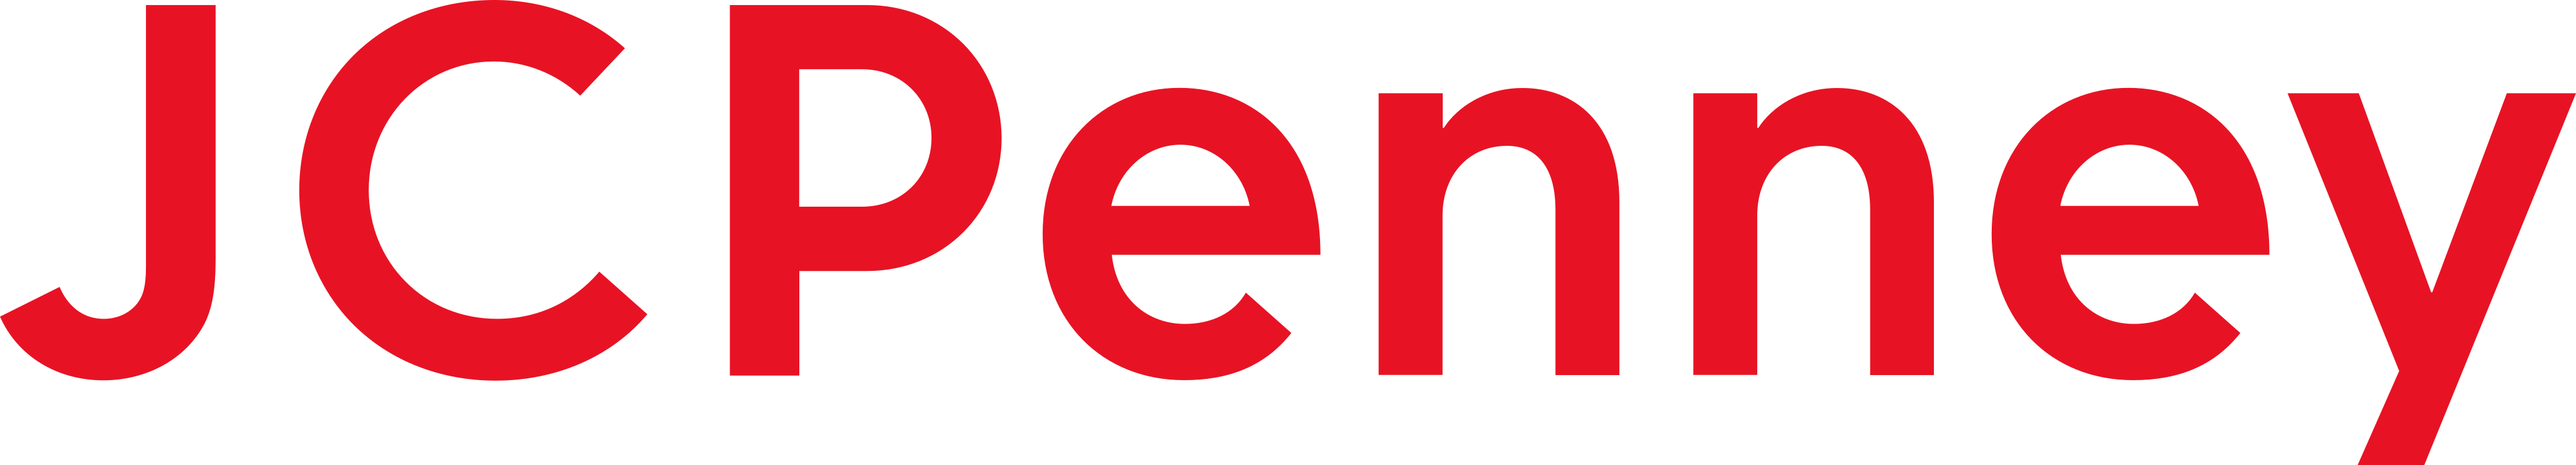 jcpenney logo - JCPenney Logo